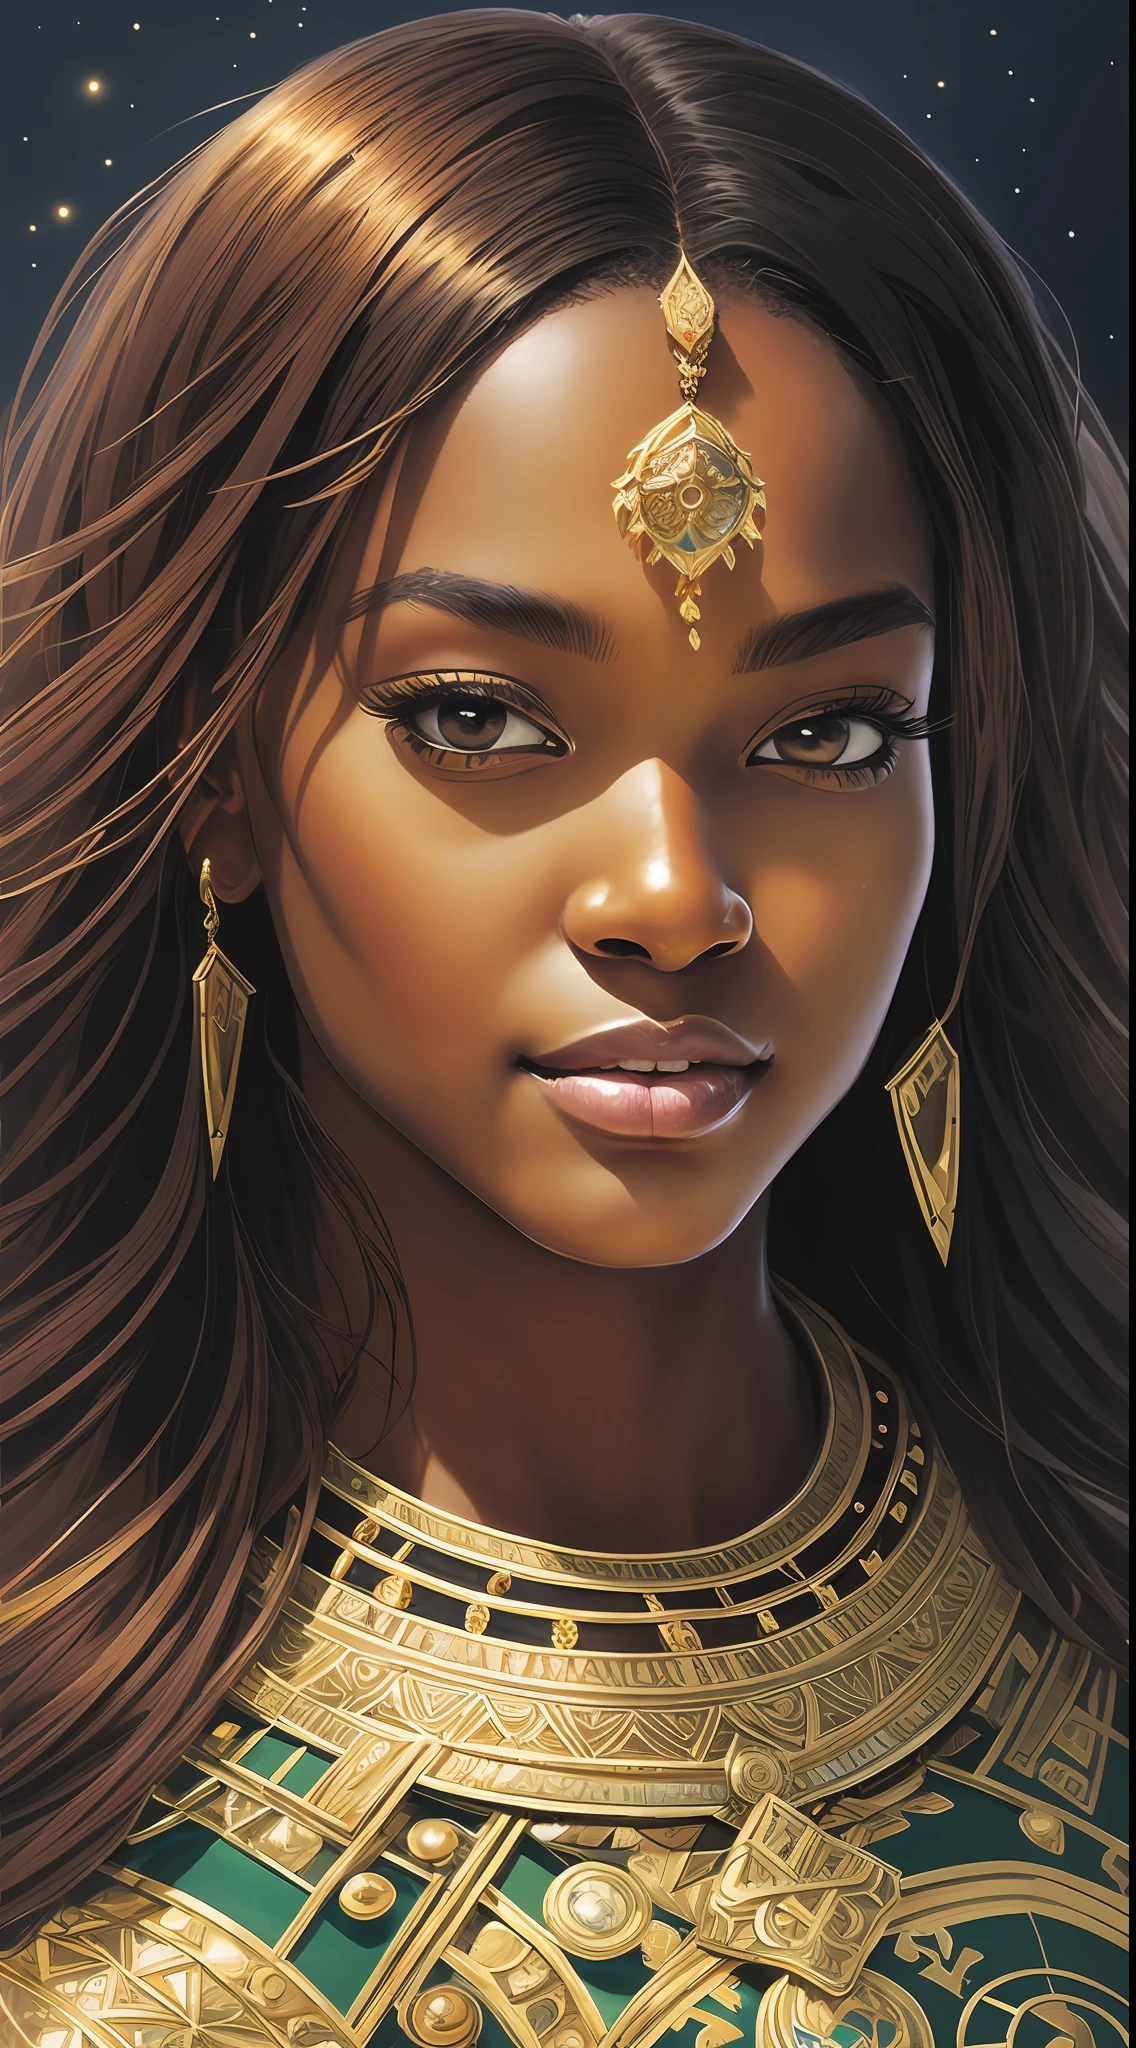 マーシーオーバーウォッチ, ゴージャスな黒人アフリカの王女の美しい肖像画, 美しい黒人の王女, 丸い顔, 丸いボタンの鼻, 輝く黒いガラスの皮膚, 輝くヘーゼルブラウンの目, ハイライトされた栗色のロングストレートヘア, adorned in 複雑な golden jewelry, 自信に満ちた半笑い, ニヤニヤ, フェイスペインティングなし, ドラマチックで鮮明な照明, 複雑な, 野生, エキゾチックな美しさ, 非常に詳細な, デジタルペインティング, アートステーション, コンセプトアート, スムーズ, シャープなフォーカス, 図, アートジャーム、グレッグ・ルトコウスキー、アルフォンス・ミュシャによるアート, 宇宙カメラの映像